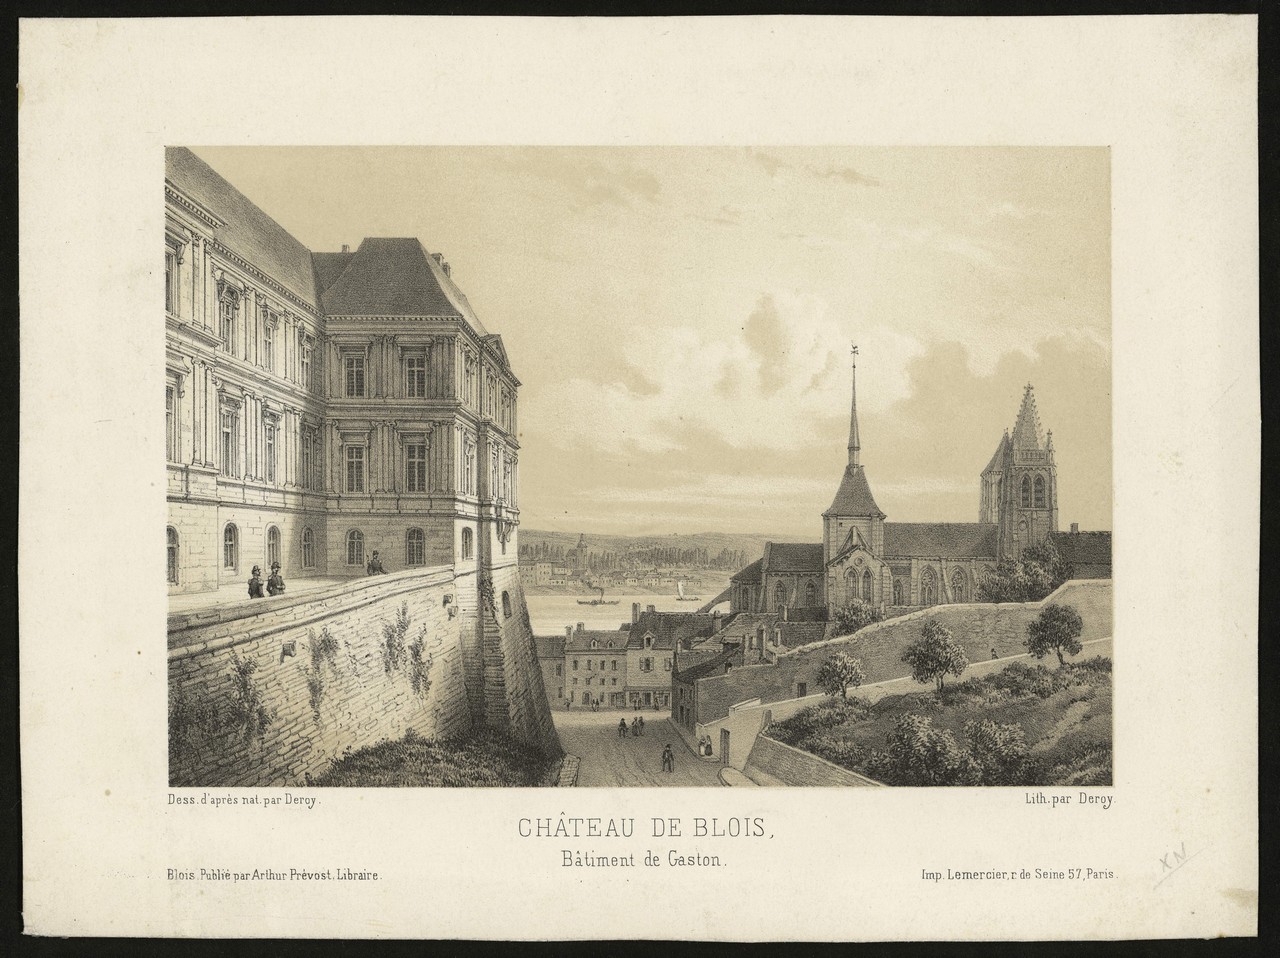 Deroy, Château de Blois, bâtiment de Gaston, lithographie, vers 1855